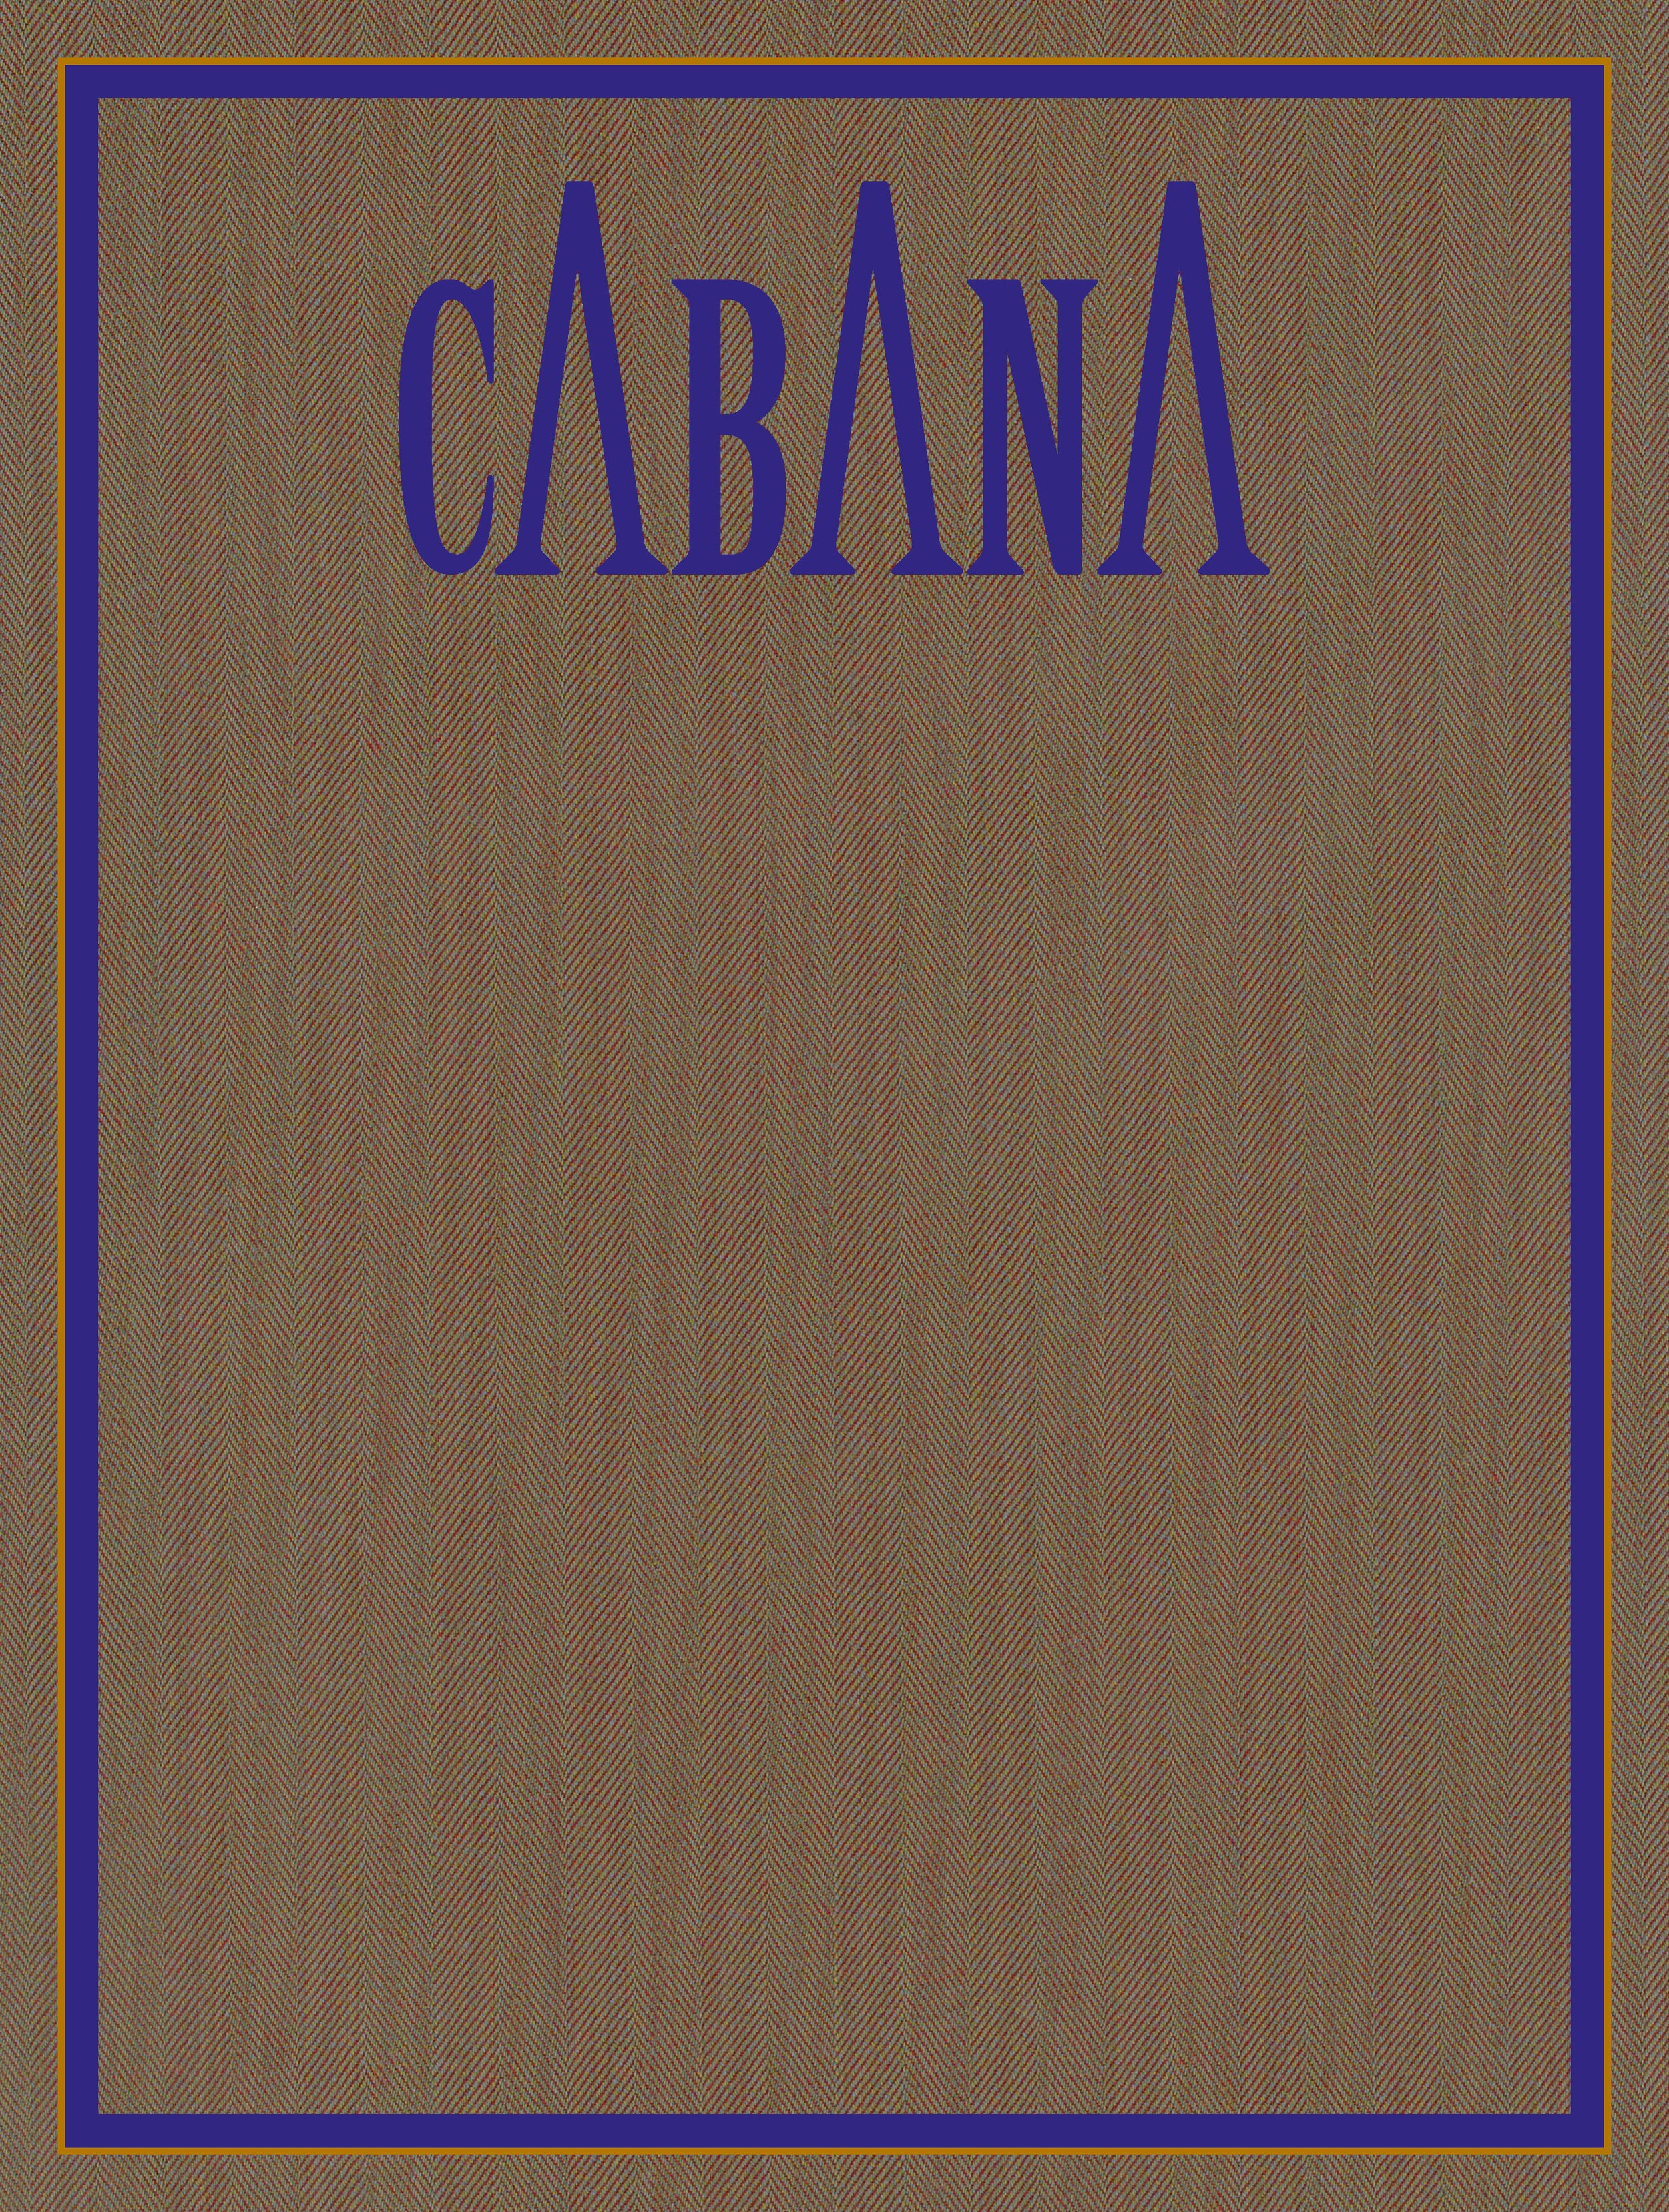 CABANA_COVER-montaggi3.jpg